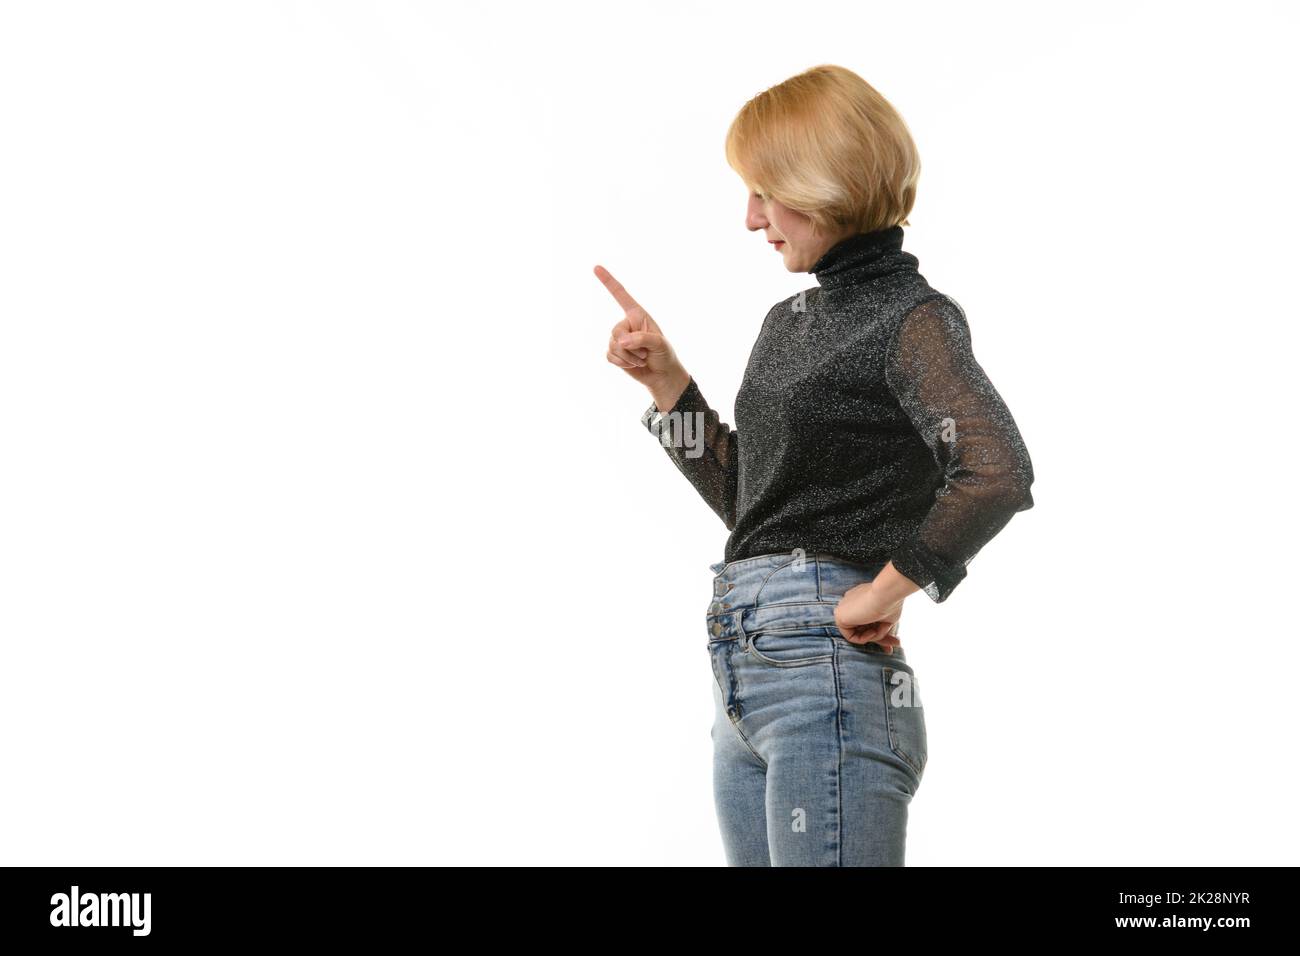 La donna guarda a sinistra e ha alzato il dito indice in modo guerrioso, isolato su sfondo bianco Foto Stock